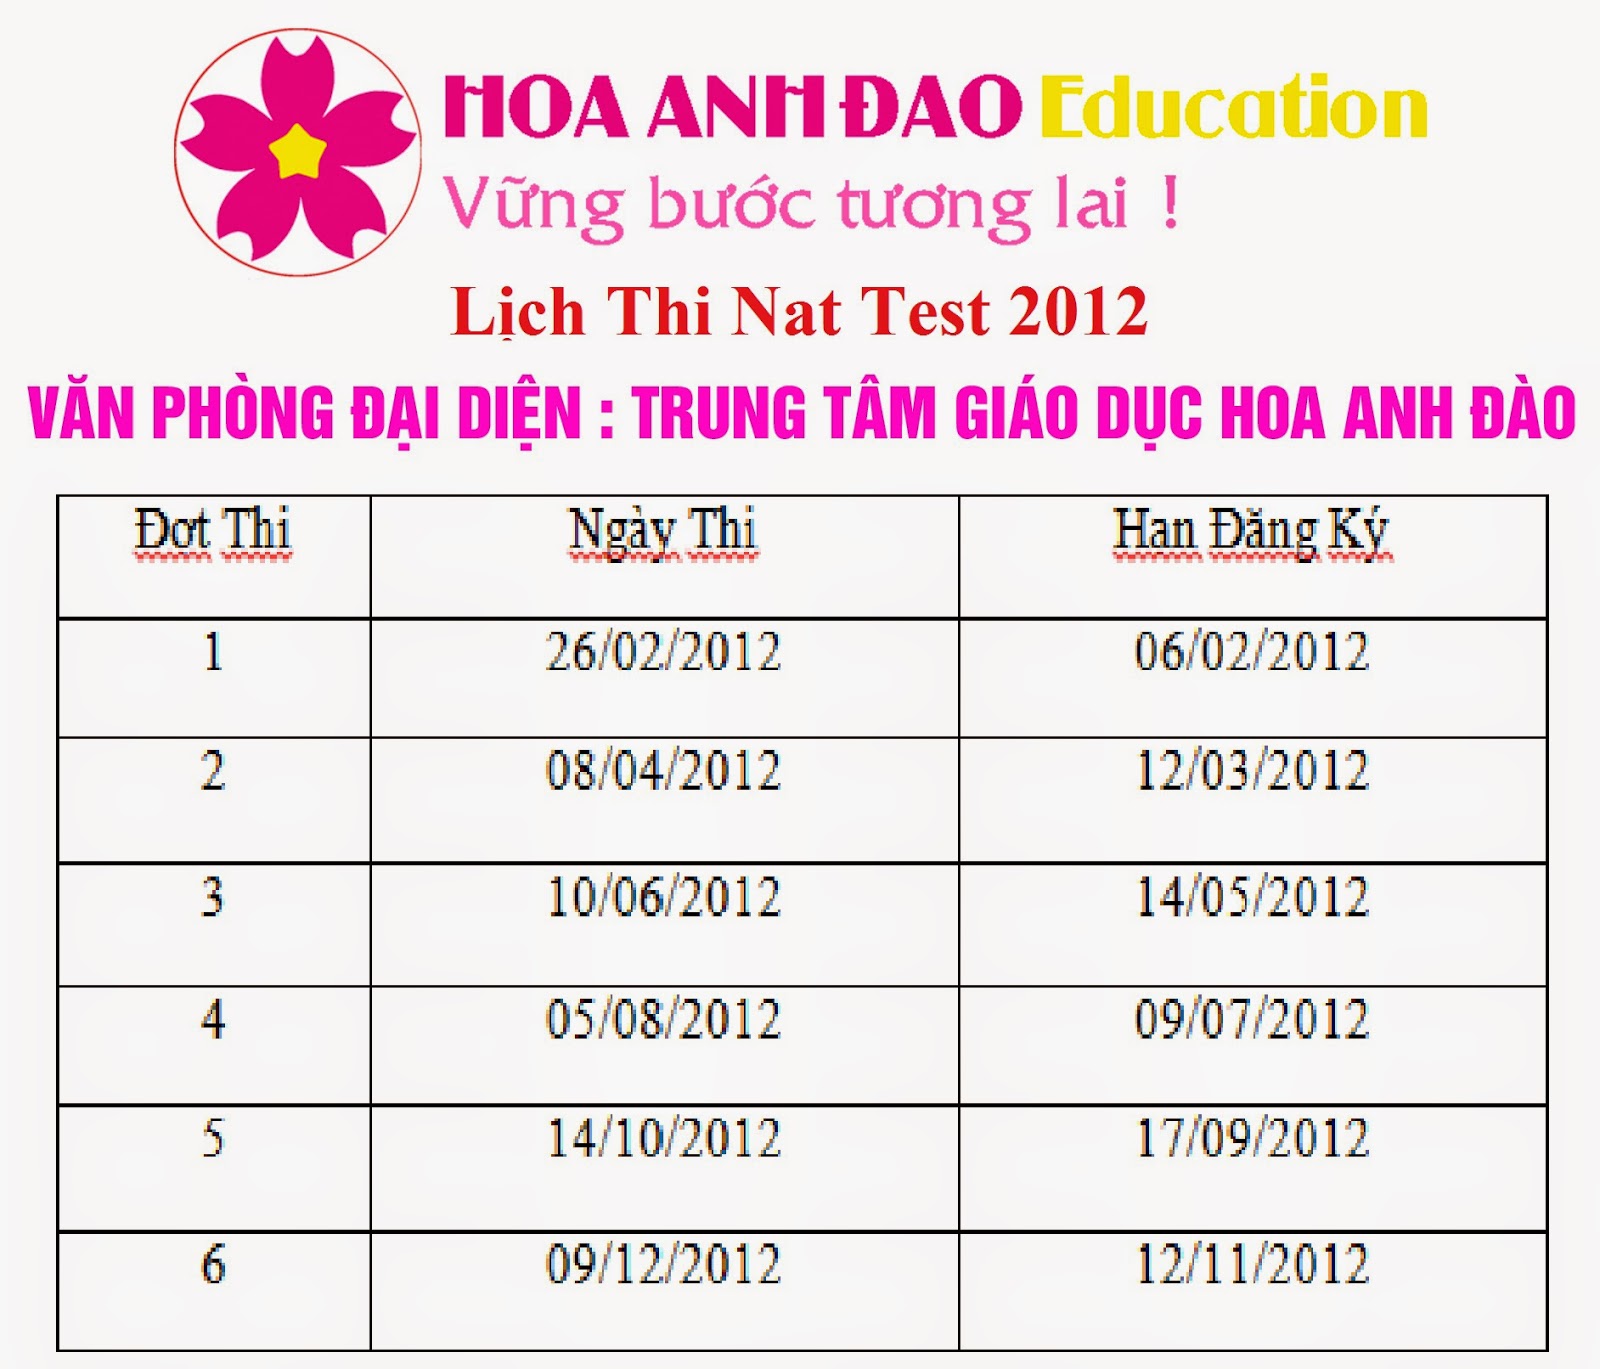 Lich Thi Nat Test 2012